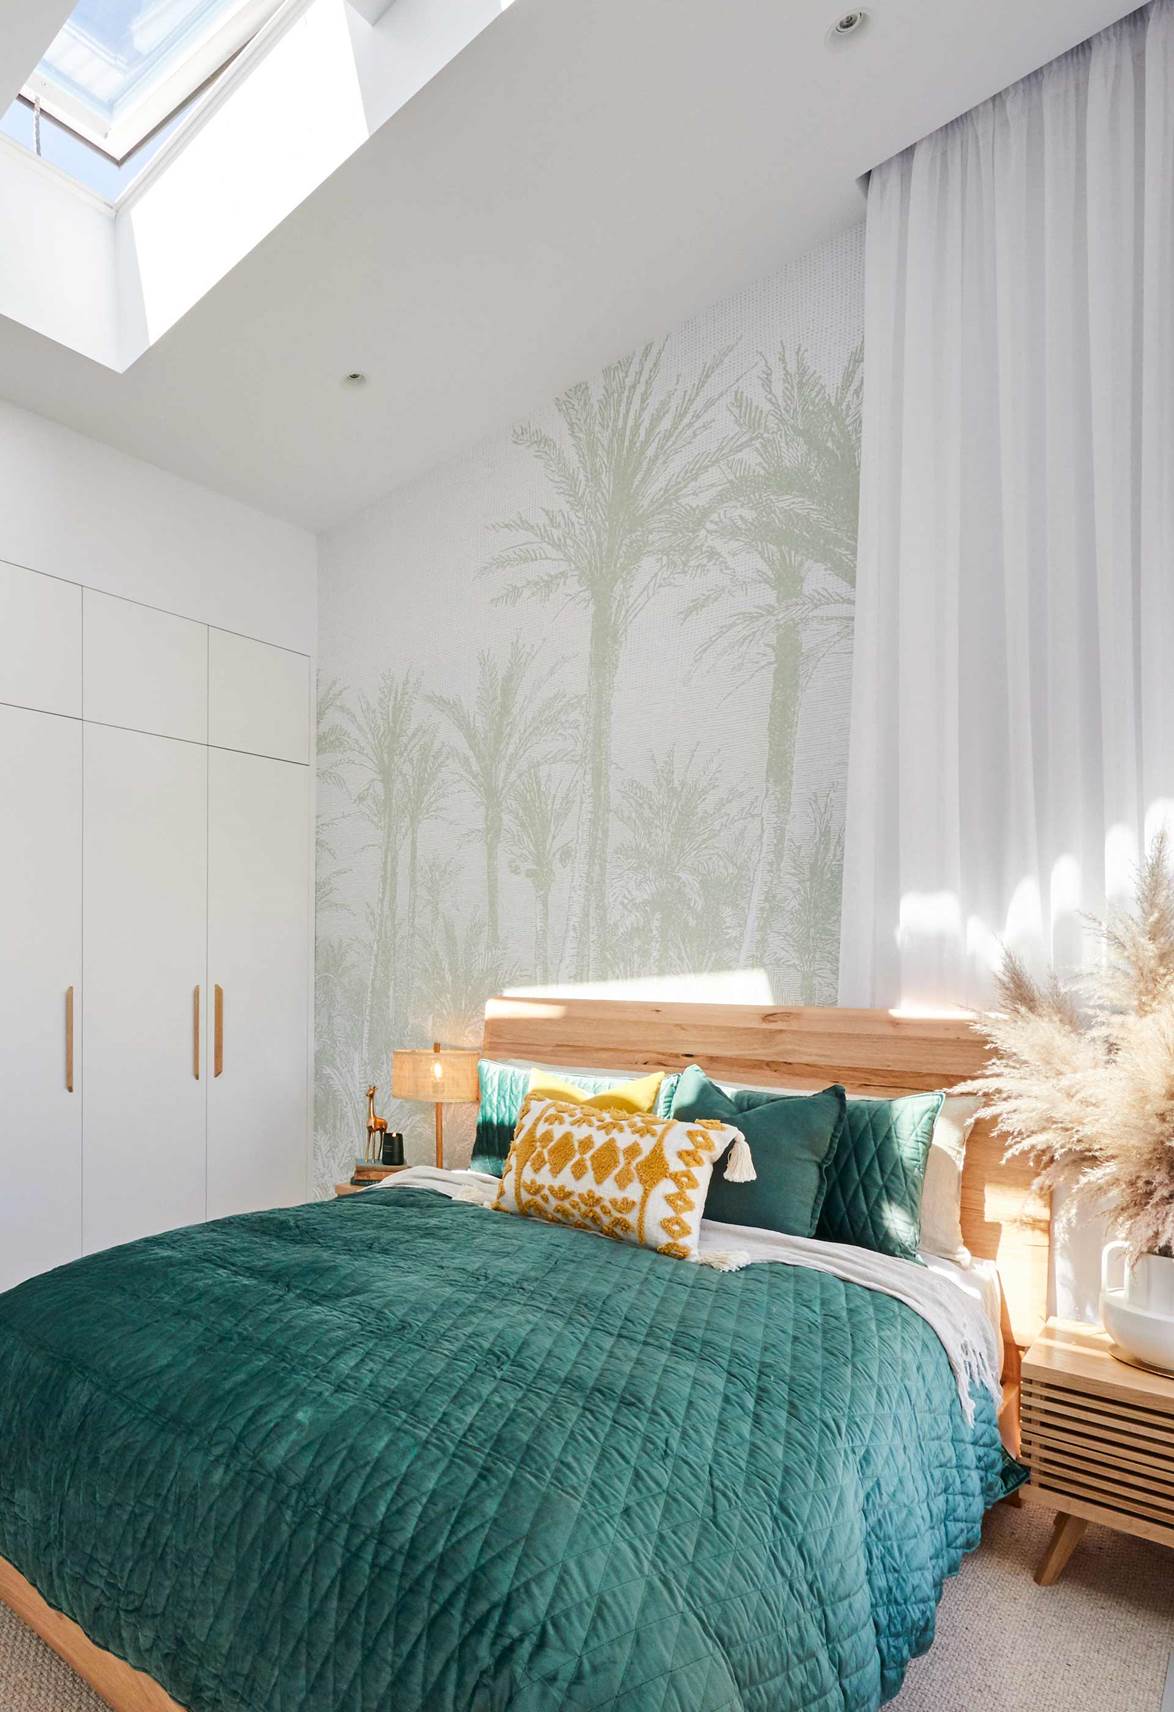 12 ý tưởng thiết kế giúp bạn có được căn phòng ngủ đẹp ngang tầm làm từ chuyên gia - Ảnh 4.